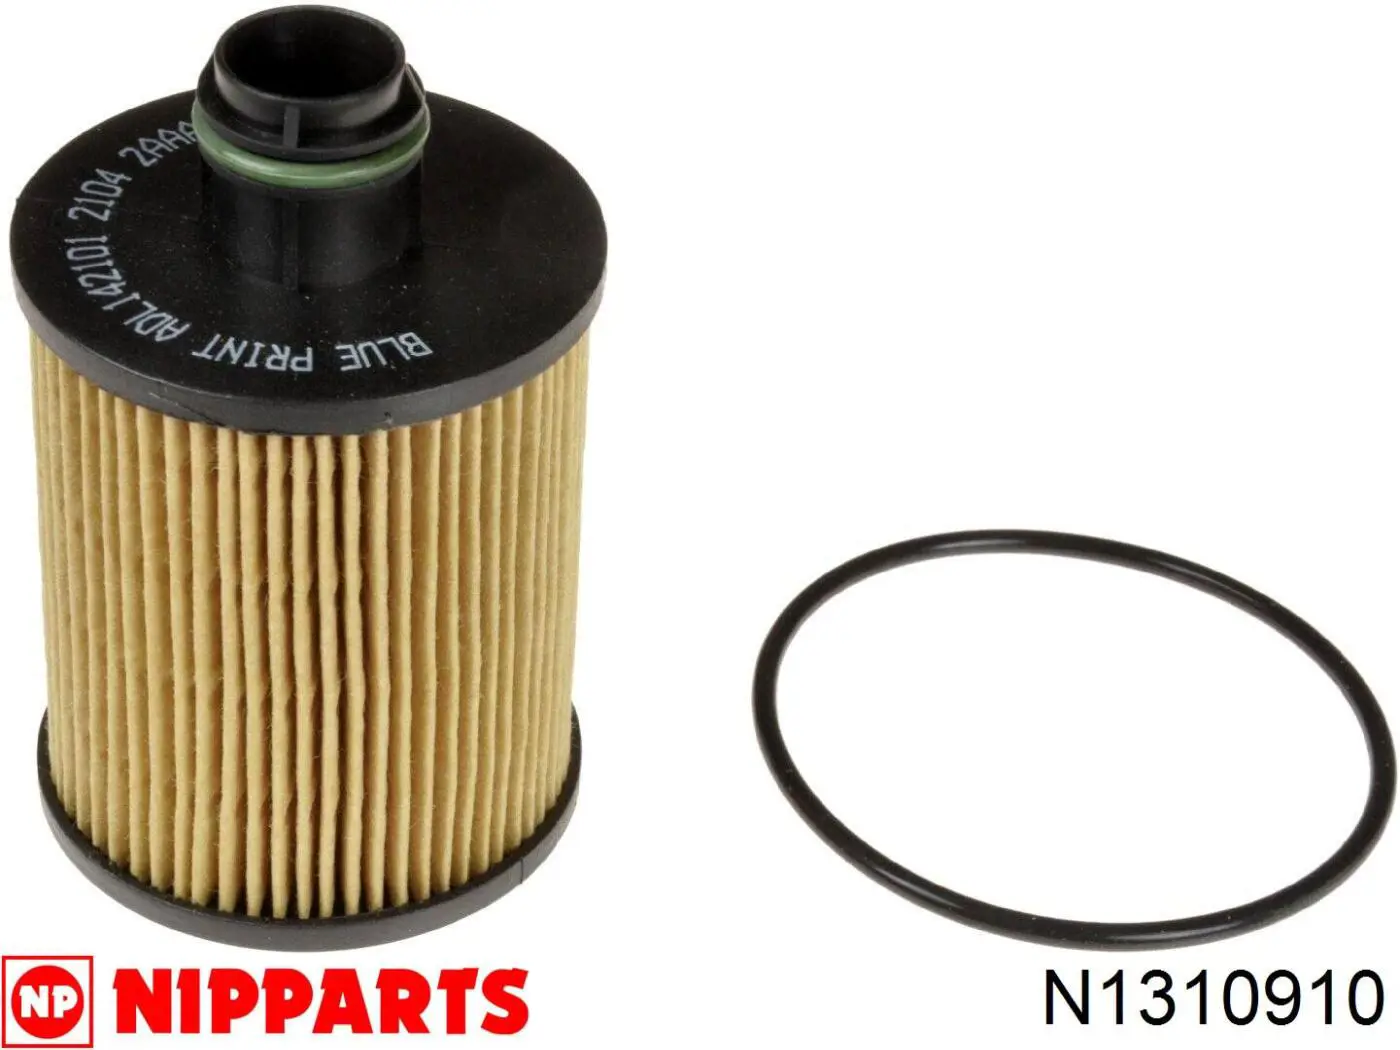 Filtro de aceite N1310910 Nipparts